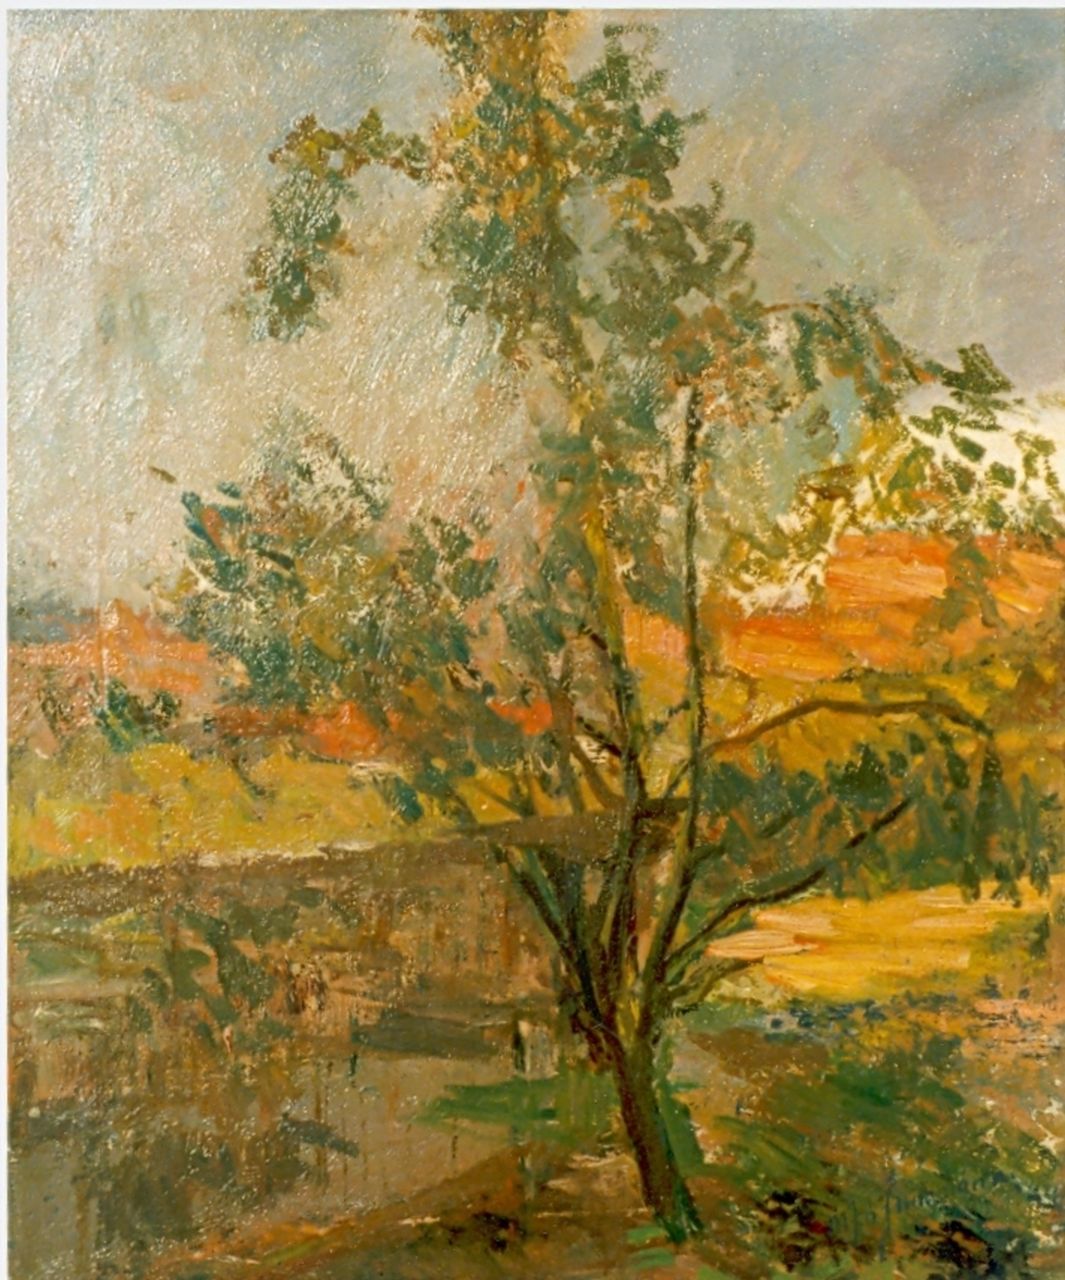 Maarten Jungmann | A tree in a summer landscape, Öl auf Leinwand, 57,3 x 48,0 cm, signed l.r.